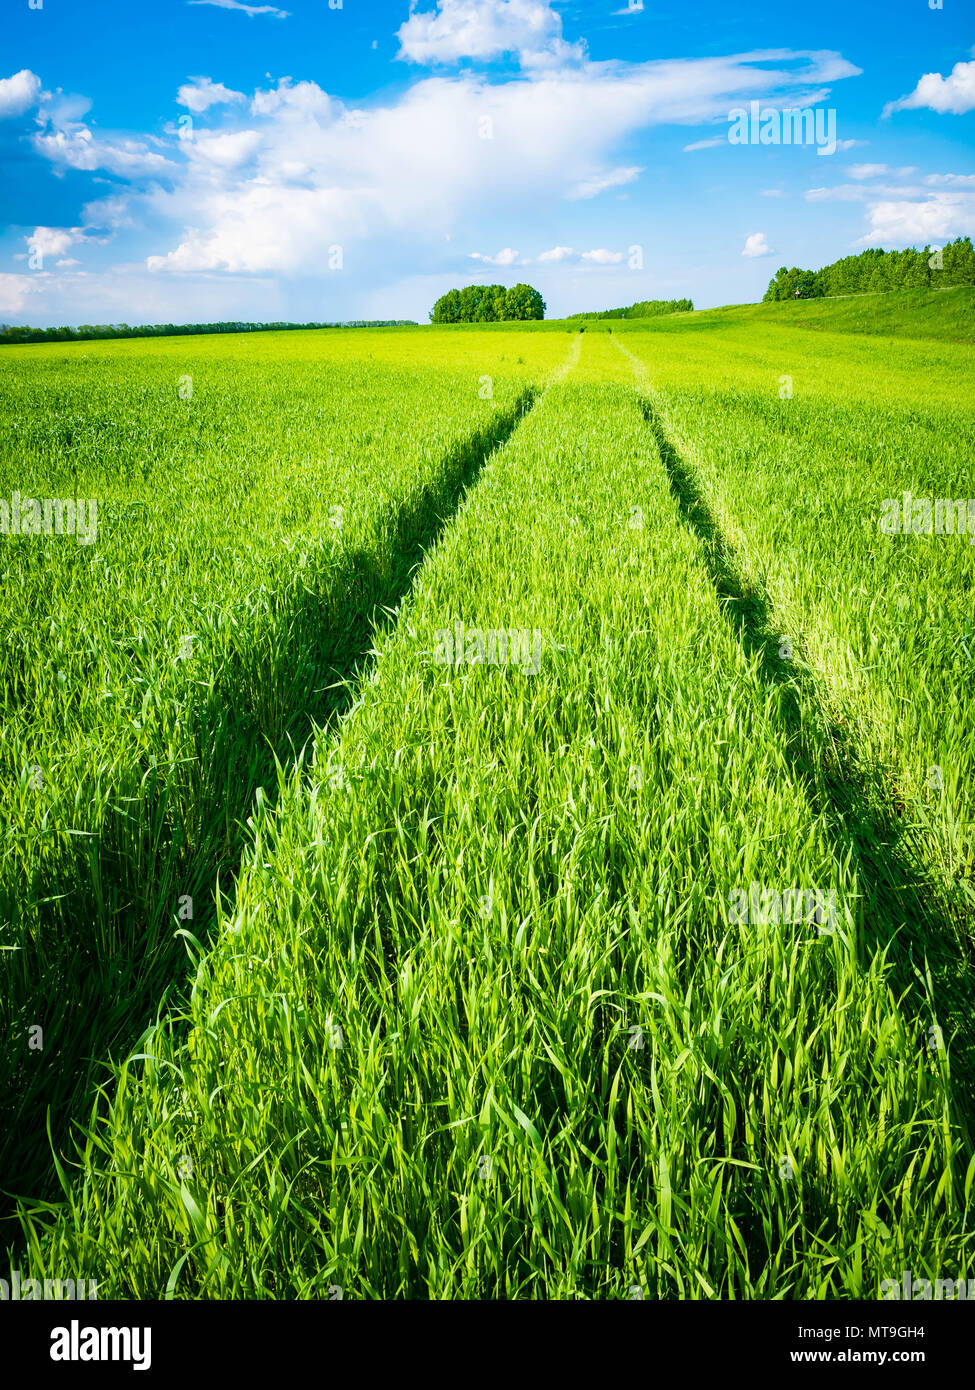 Campo de trigo verde. Camino en un campo de trigo verde. Rastros de transporte agrícola sobre la hierba en un día soleado. Foto de stock